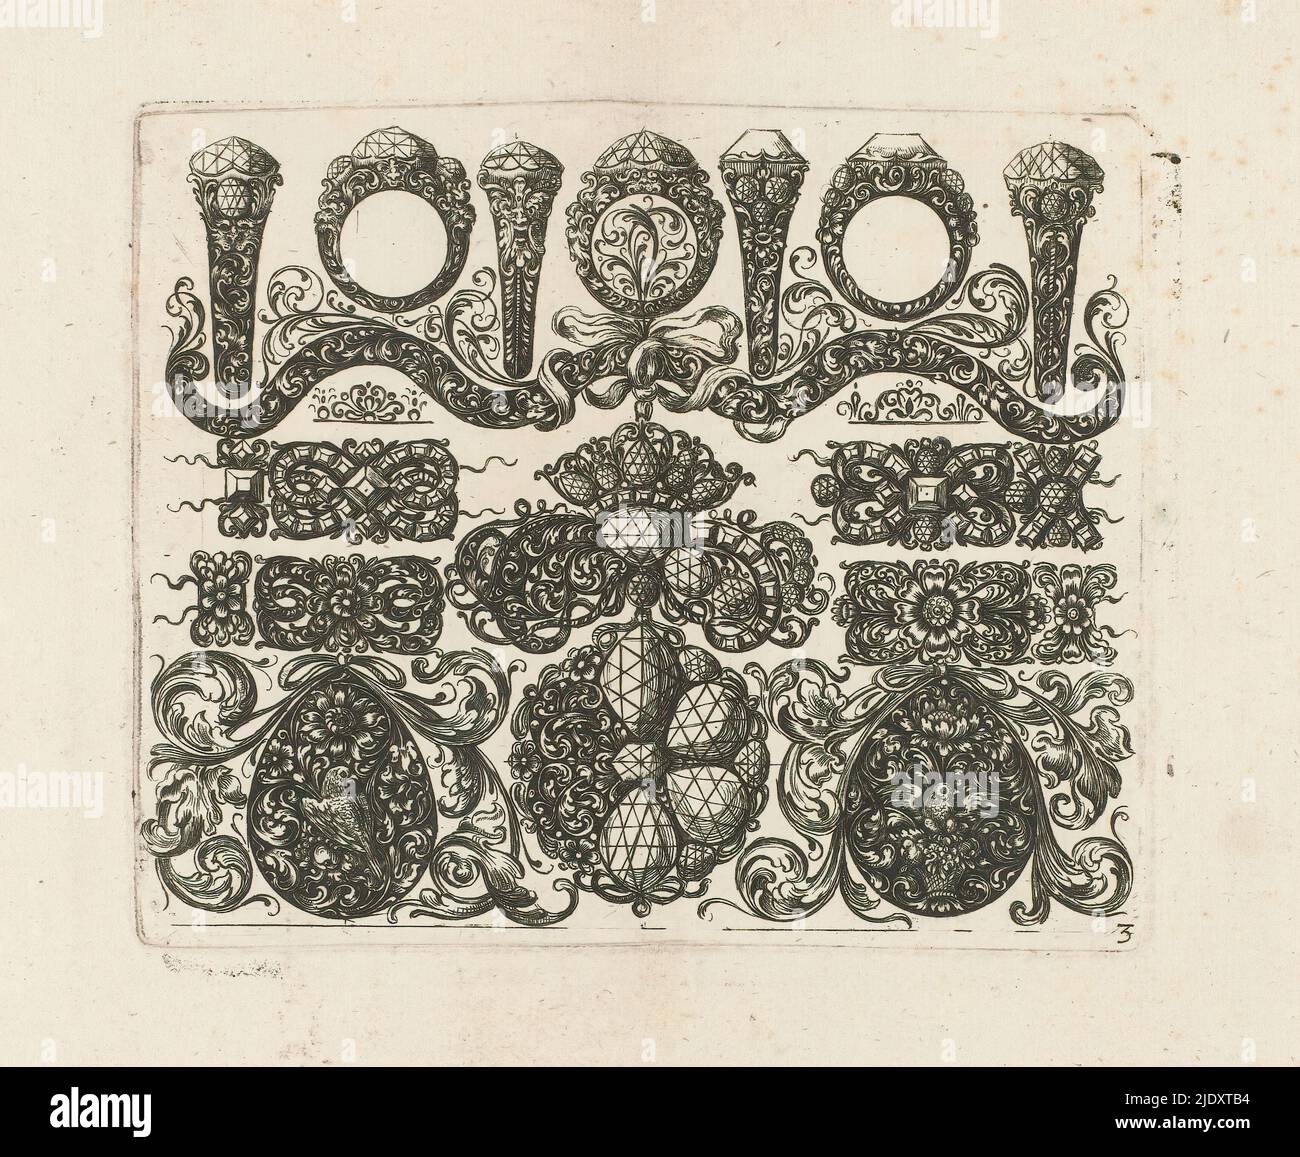 Dessins pour bijoux, feuille 3 en une série de 6, imprimerie: Johann Wilhelm Heel, c. 1660, papier, gravure, hauteur 115 mm × largeur 139 mm Banque D'Images